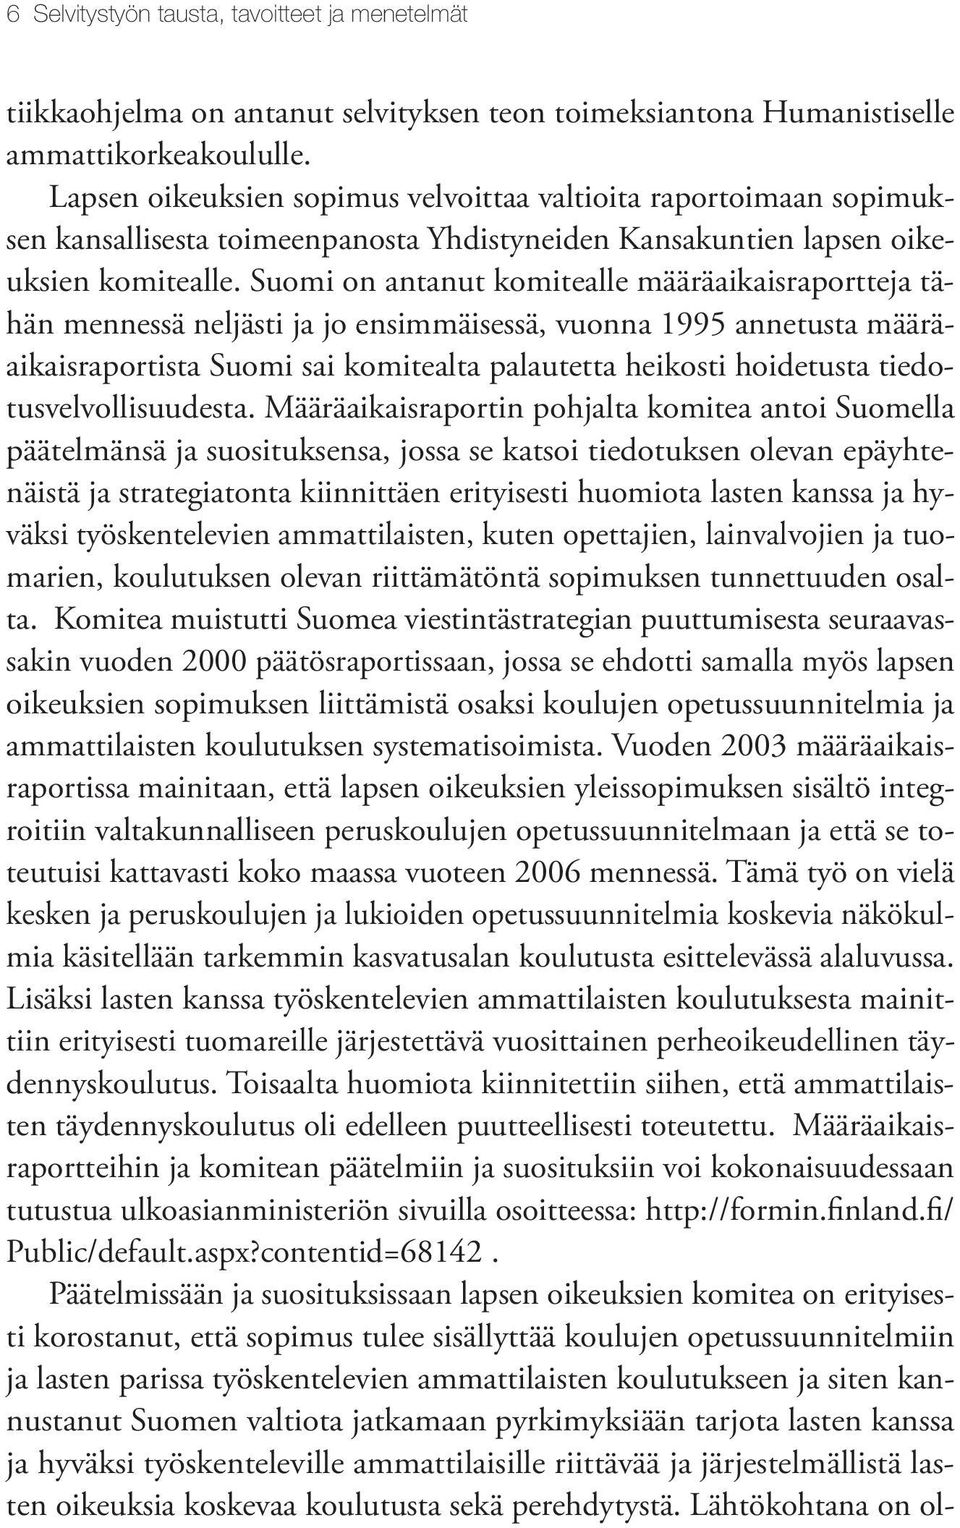 Suomi on antanut komitealle määräaikaisraportteja tähän mennessä neljästi ja jo ensimmäisessä, vuonna 1995 annetusta määräaikaisraportista Suomi sai komitealta palautetta heikosti hoidetusta